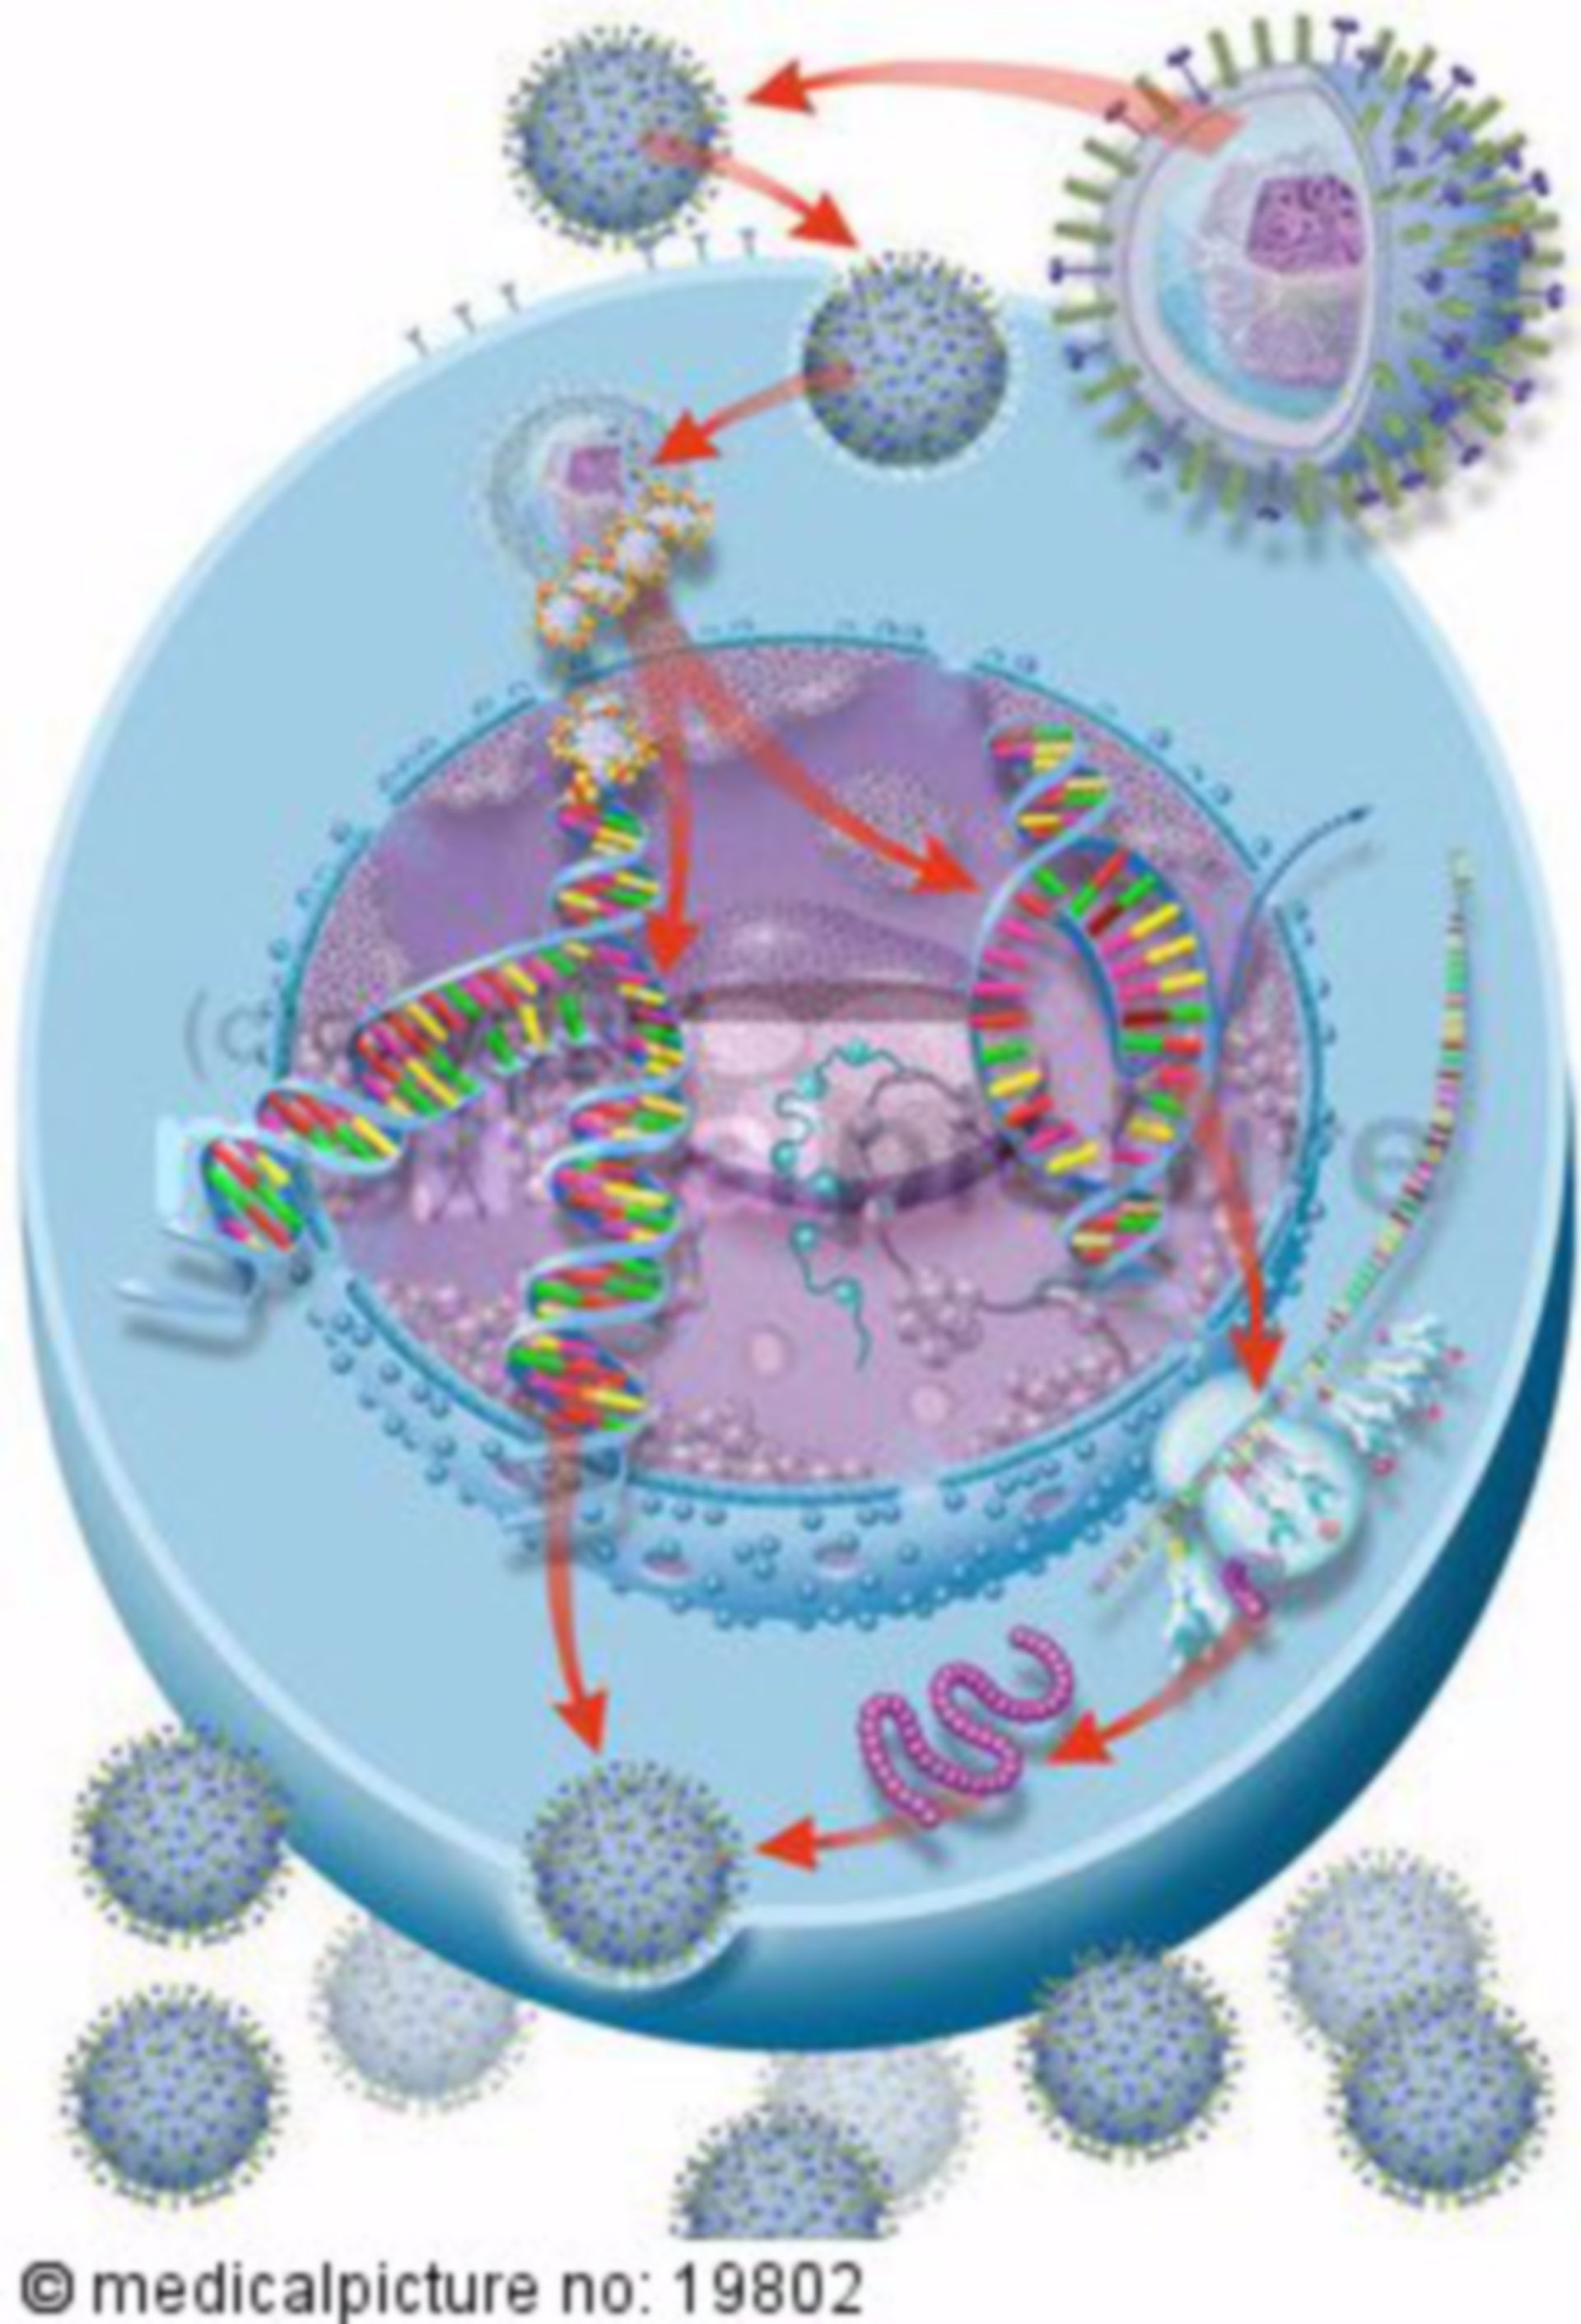  Vermehrungszyklus von Viren 